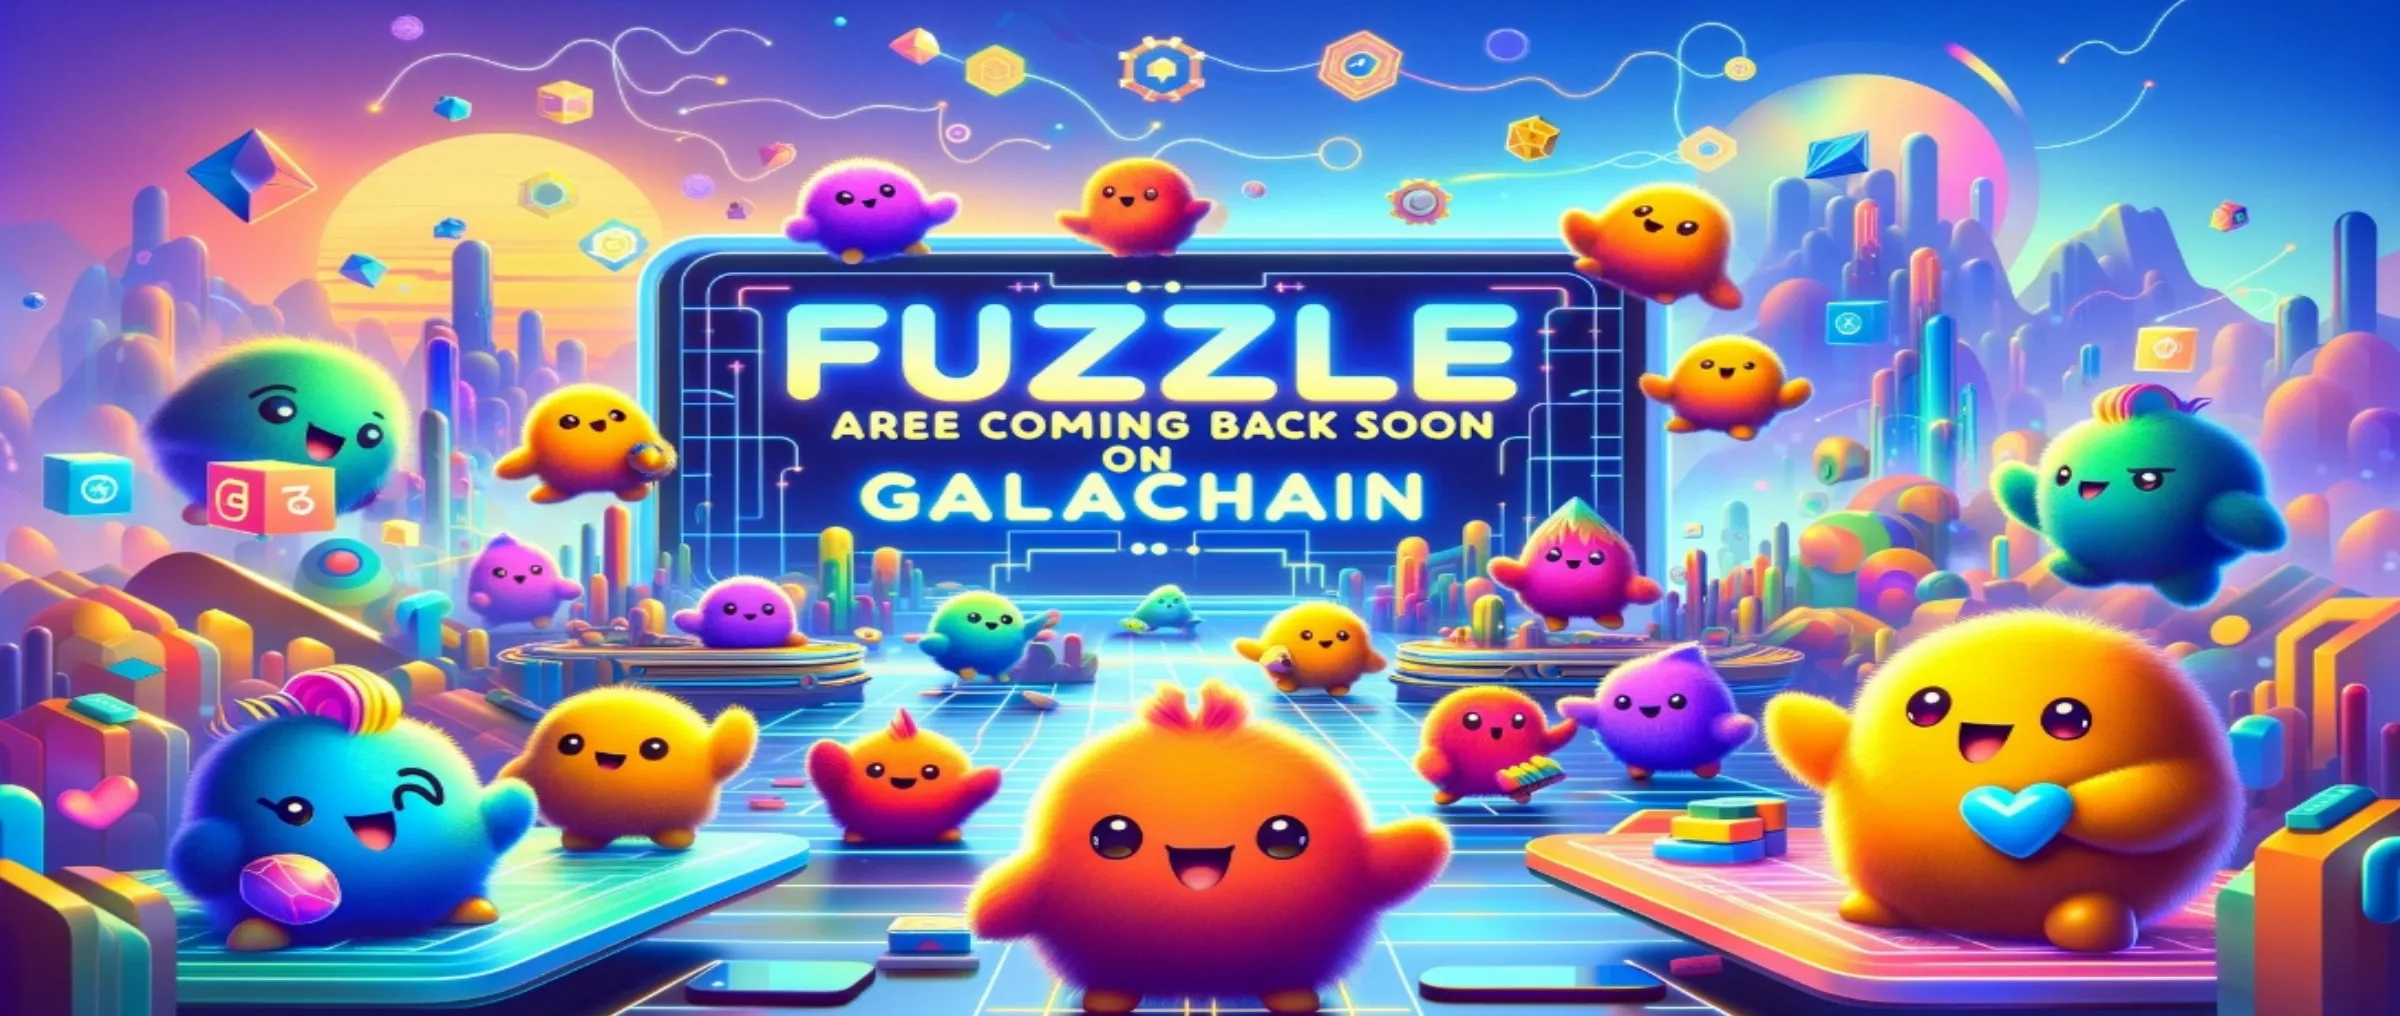 Fuzzle NFT возвращаются: в скором времени появятся на GalaChain